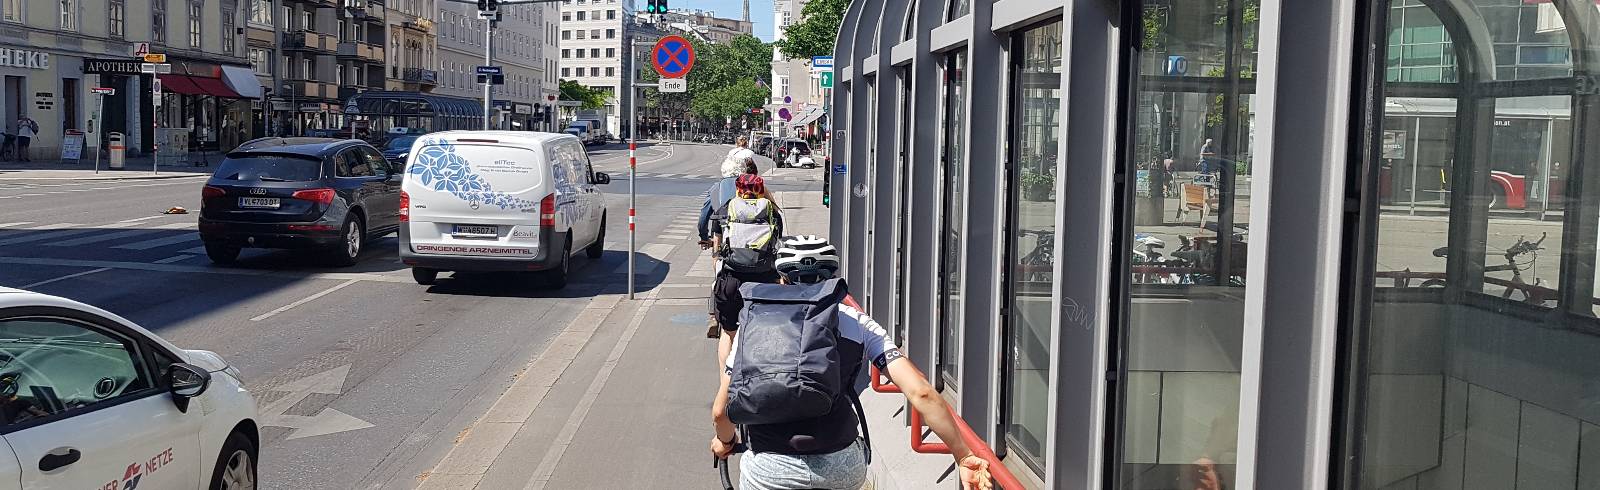 Praterstraße: Strafe bei "unsichtbarer" Fahrradampel